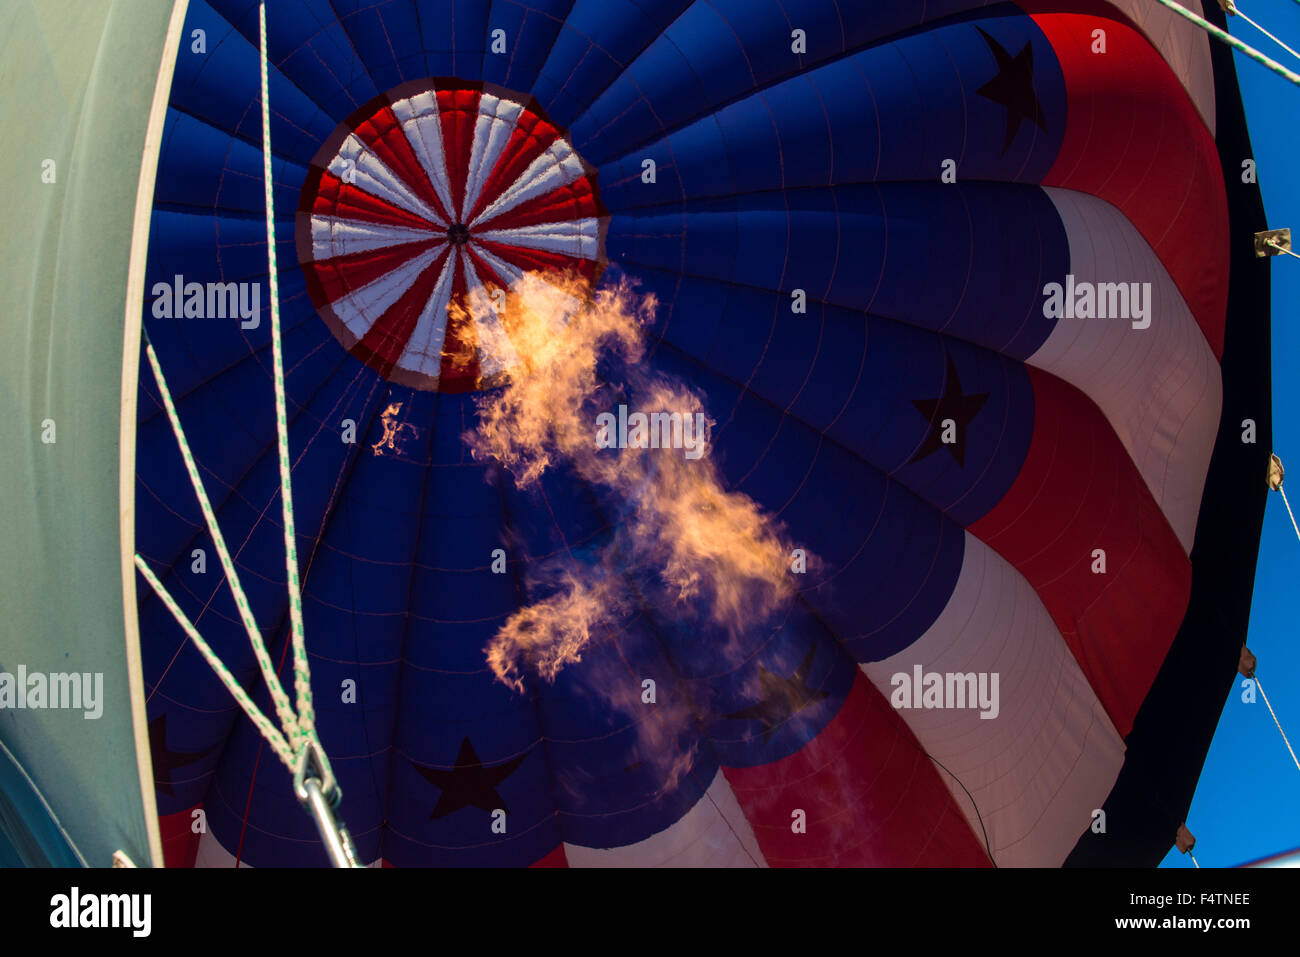 Ballon à air chaud, ballon, Albuquerque, Nouveau Mexique, USA, Amérique latine, des flammes, des concepts Banque D'Images